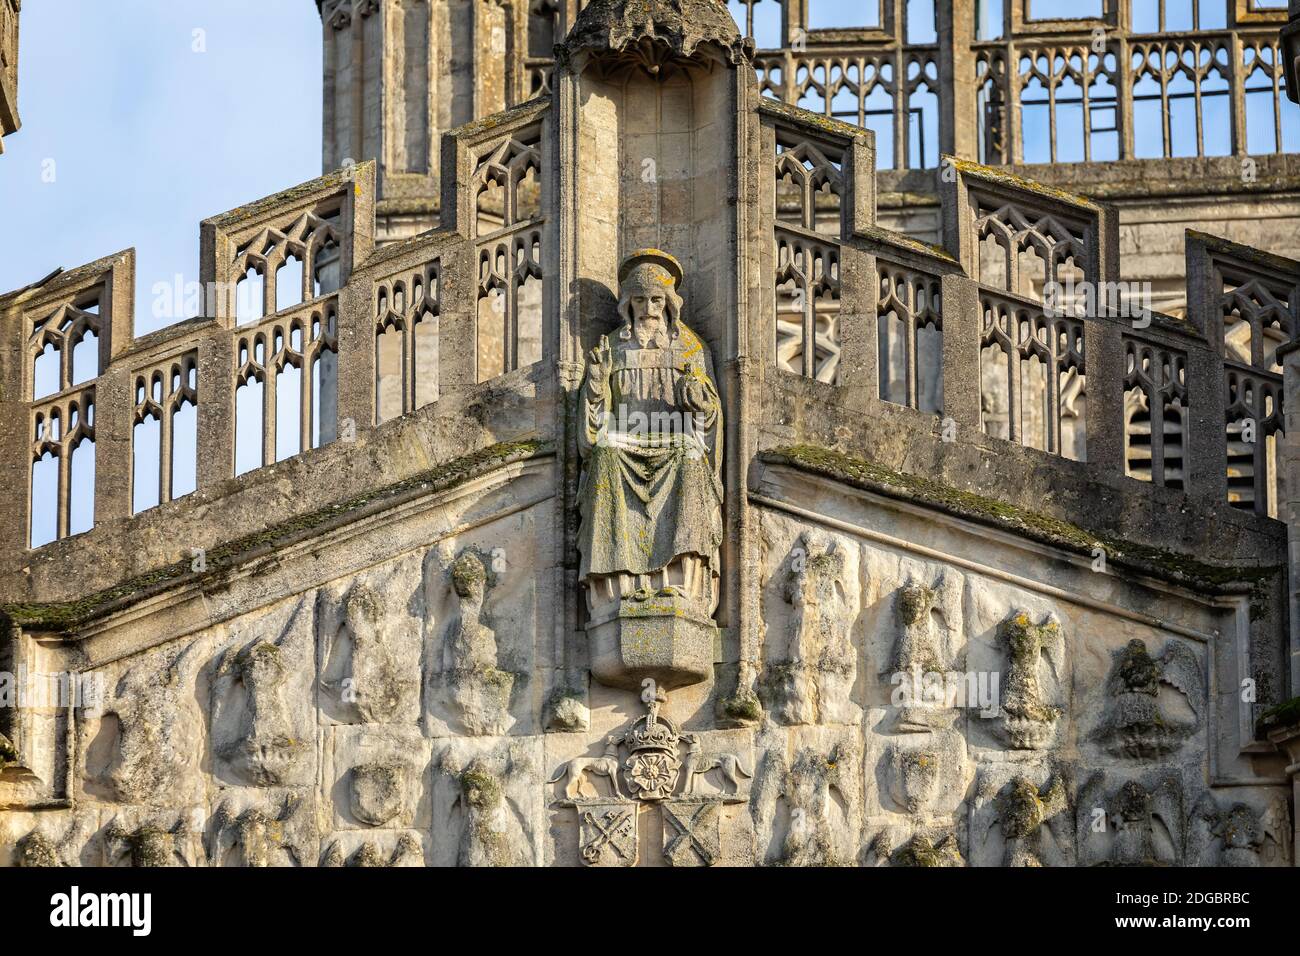 Nahaufnahme der Statue des sitzenden Christus an der Westfront der Bath Abbey in Bath, Somerset, Großbritannien am 8. Dezember 2020 Stockfoto